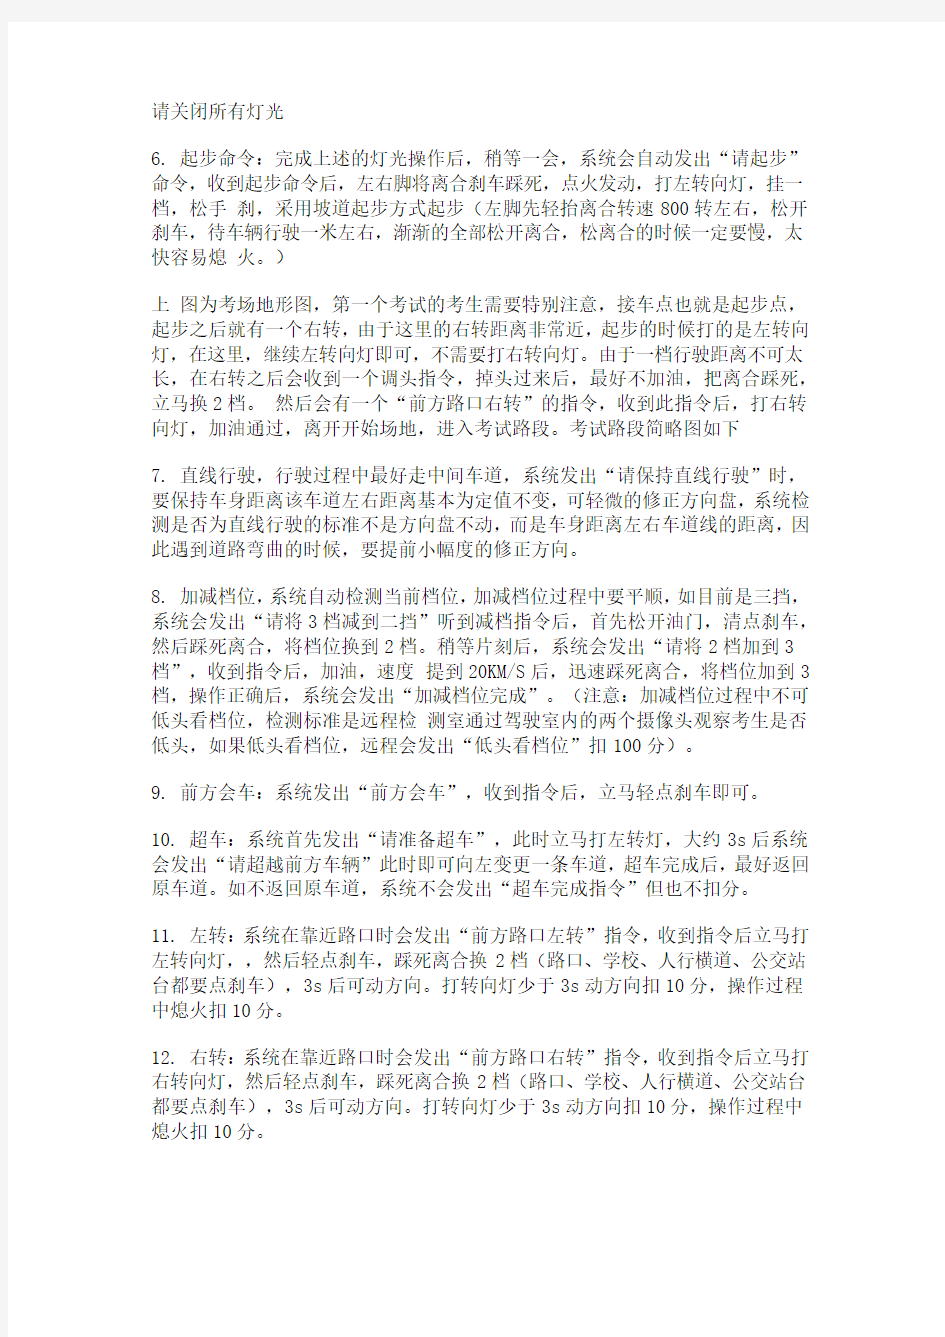 重庆大学城土主考场科目三考试具体流程